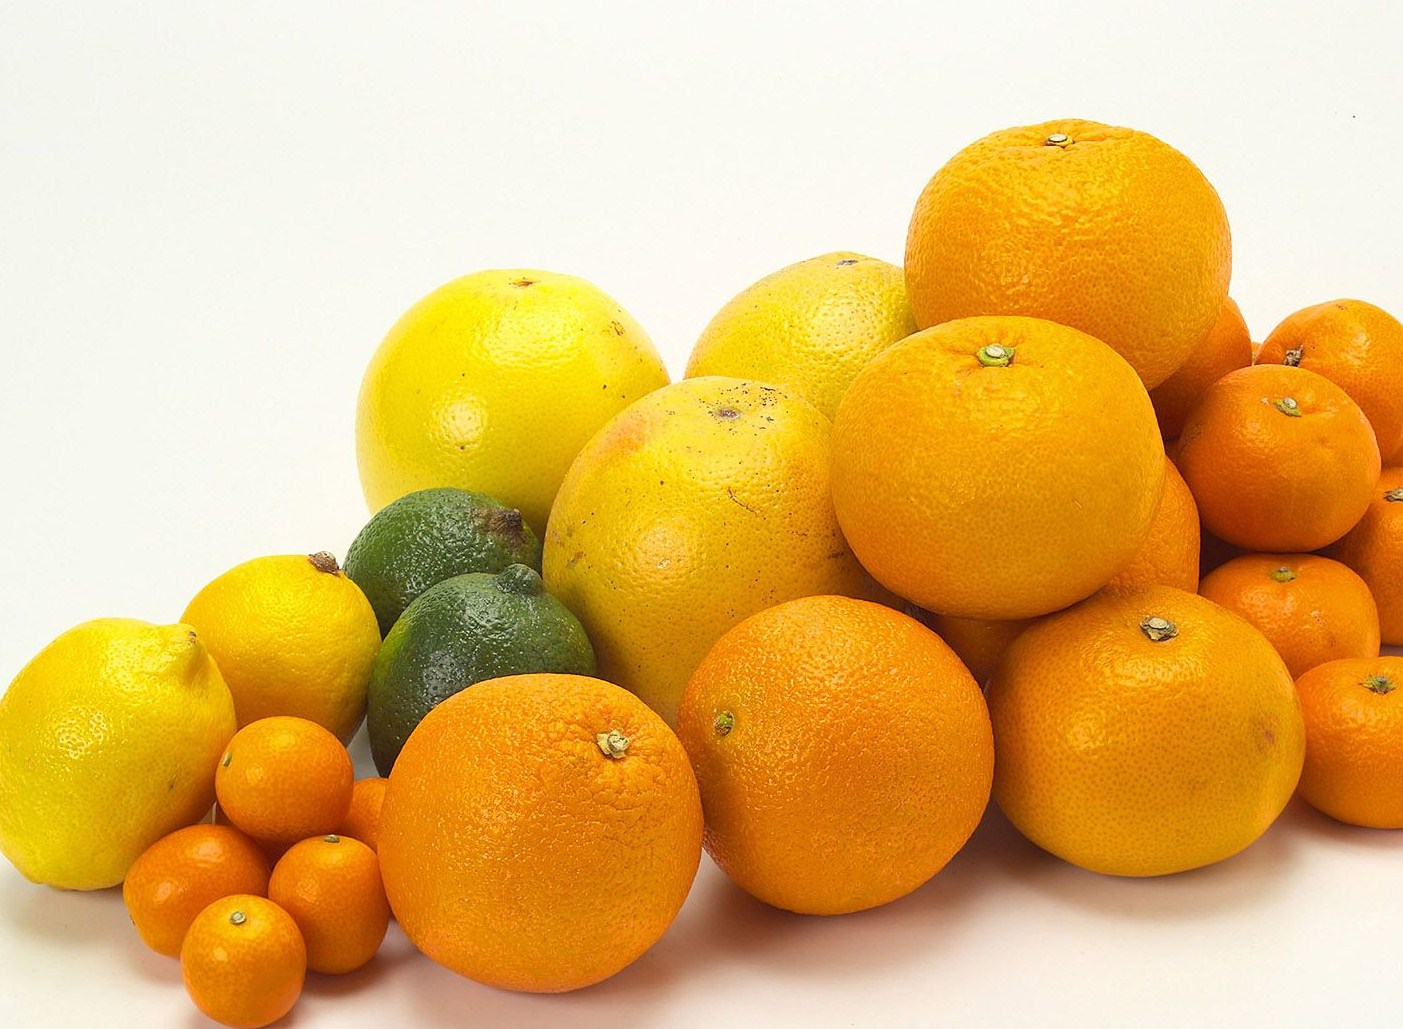 食 柑橘系フルーツが脳卒中リスクを低下する 宇山恵子 恵風ホームページ 医療 健康 美容についてのコラム